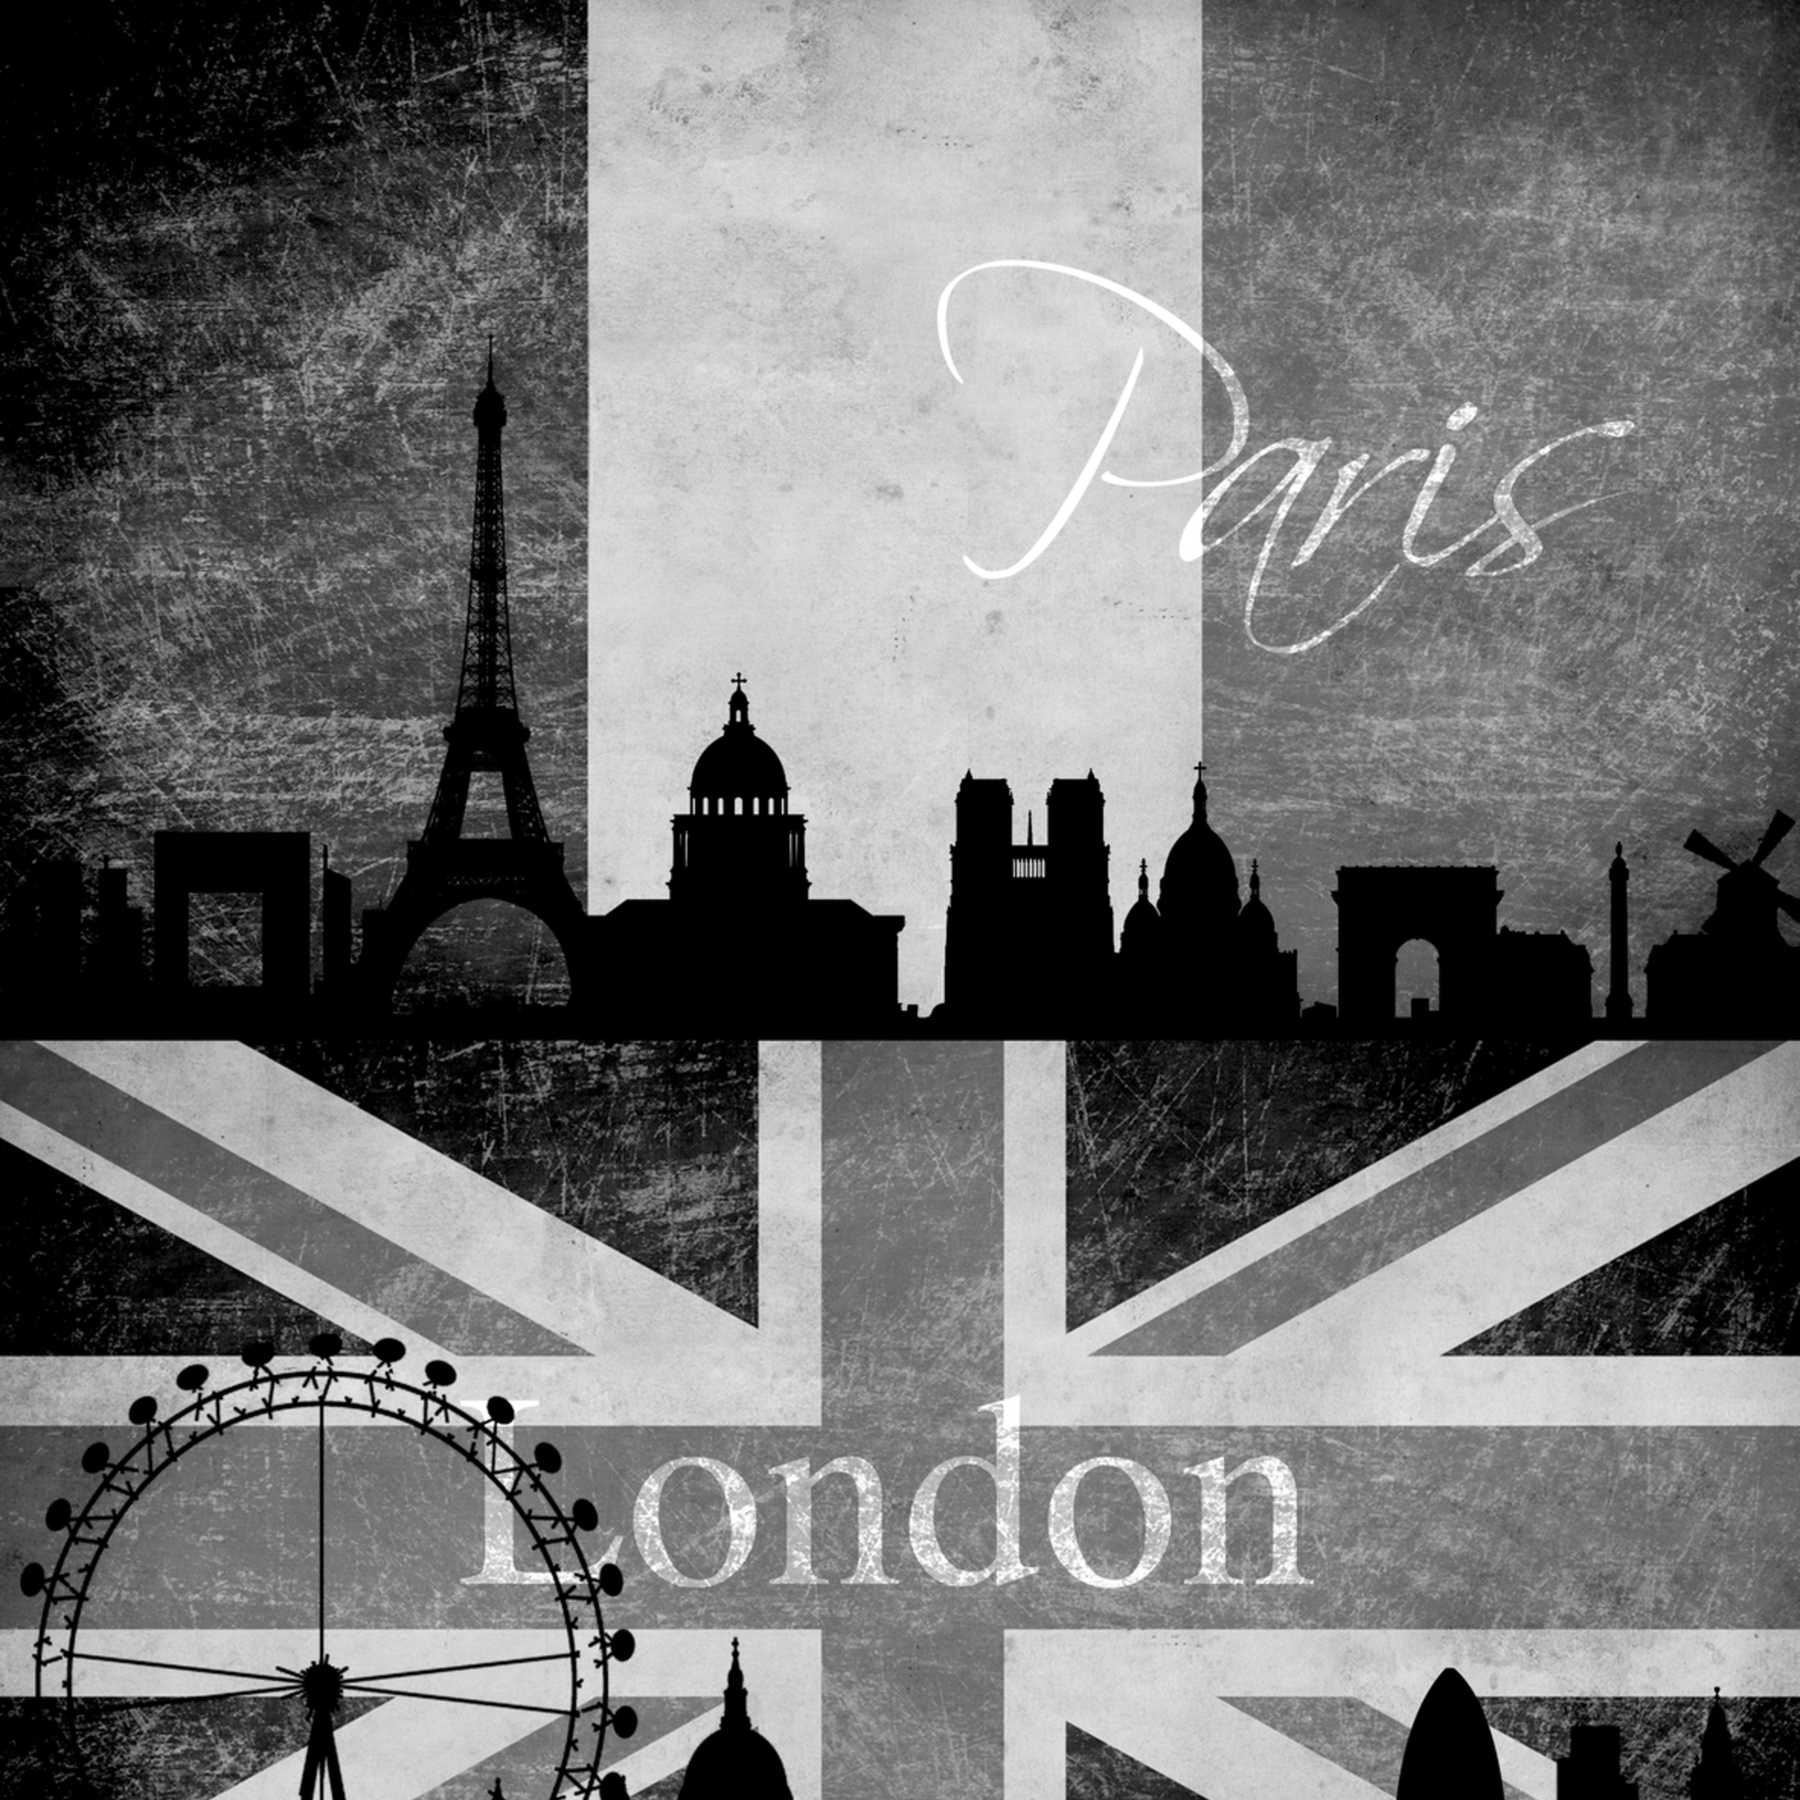             Behangpaneel Londen, New York & Parijs in retro look - zwart, wit
        